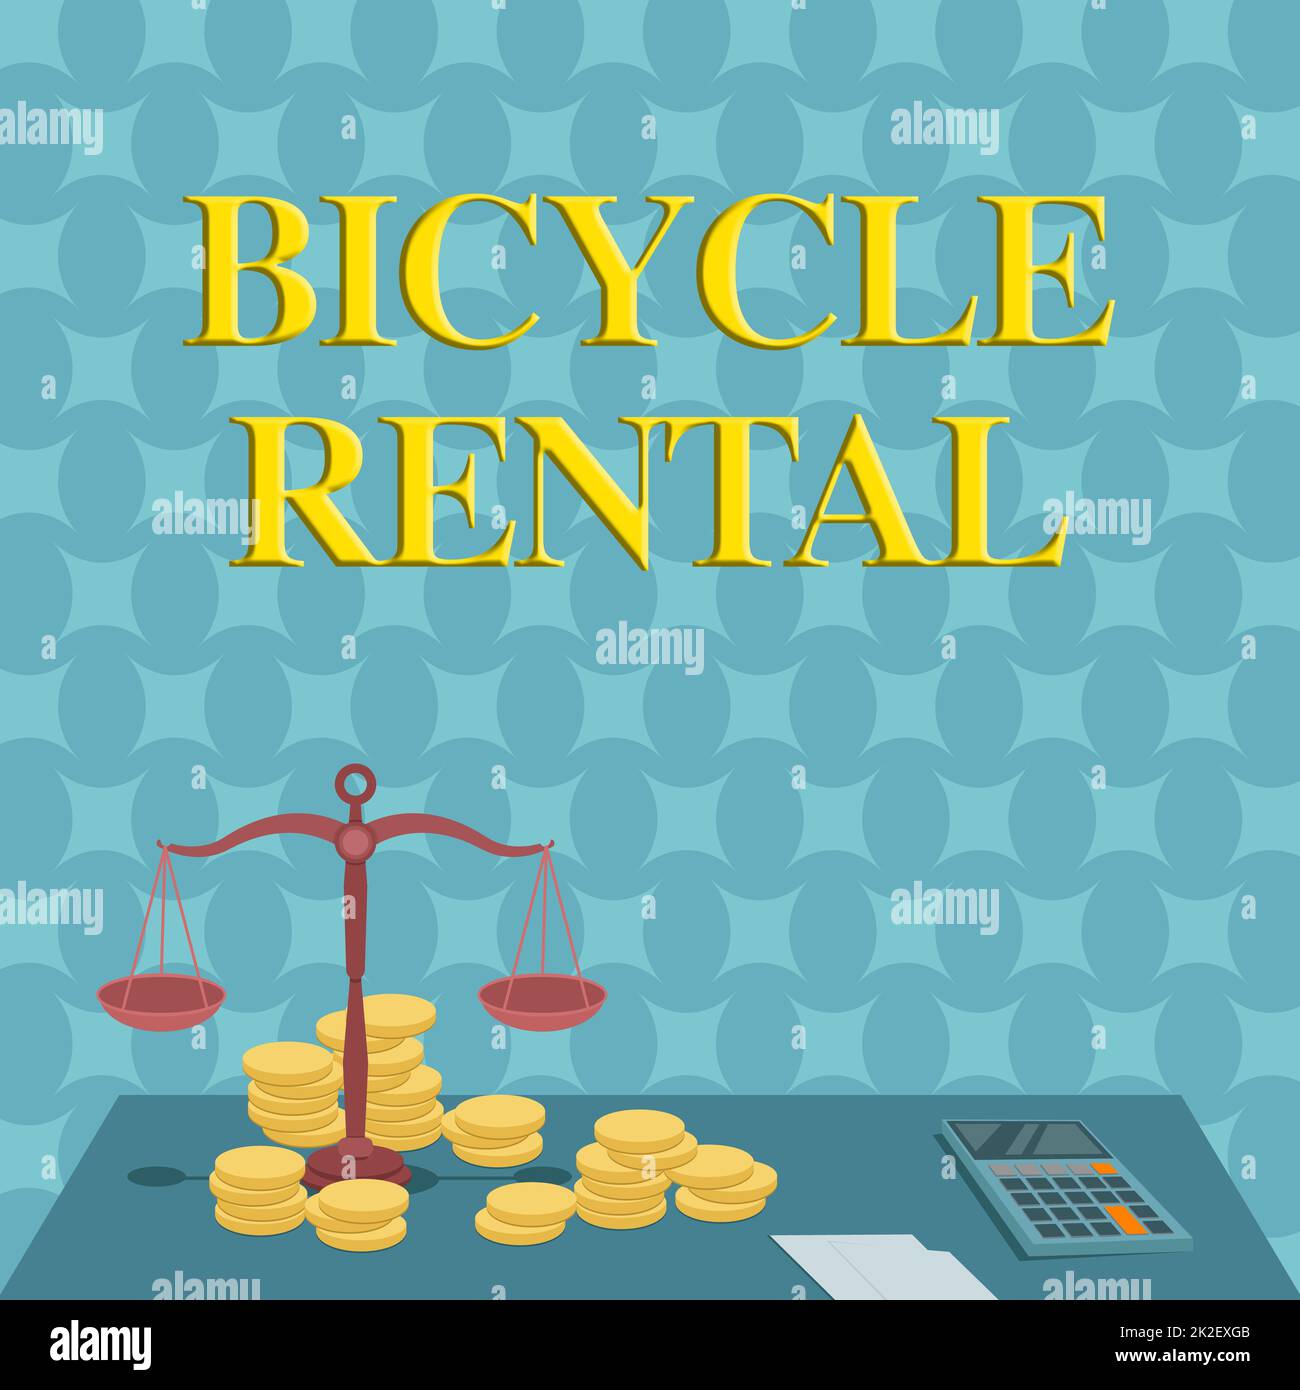 Textunterschrift zur Präsentation des Fahrradverleihs. Geschäftsidee ein Unternehmen, das Fahrräder an Touristen oder Reisende vermietet, Waage umgeben von Münzrechner, der Hypotheken zählt. Stockfoto